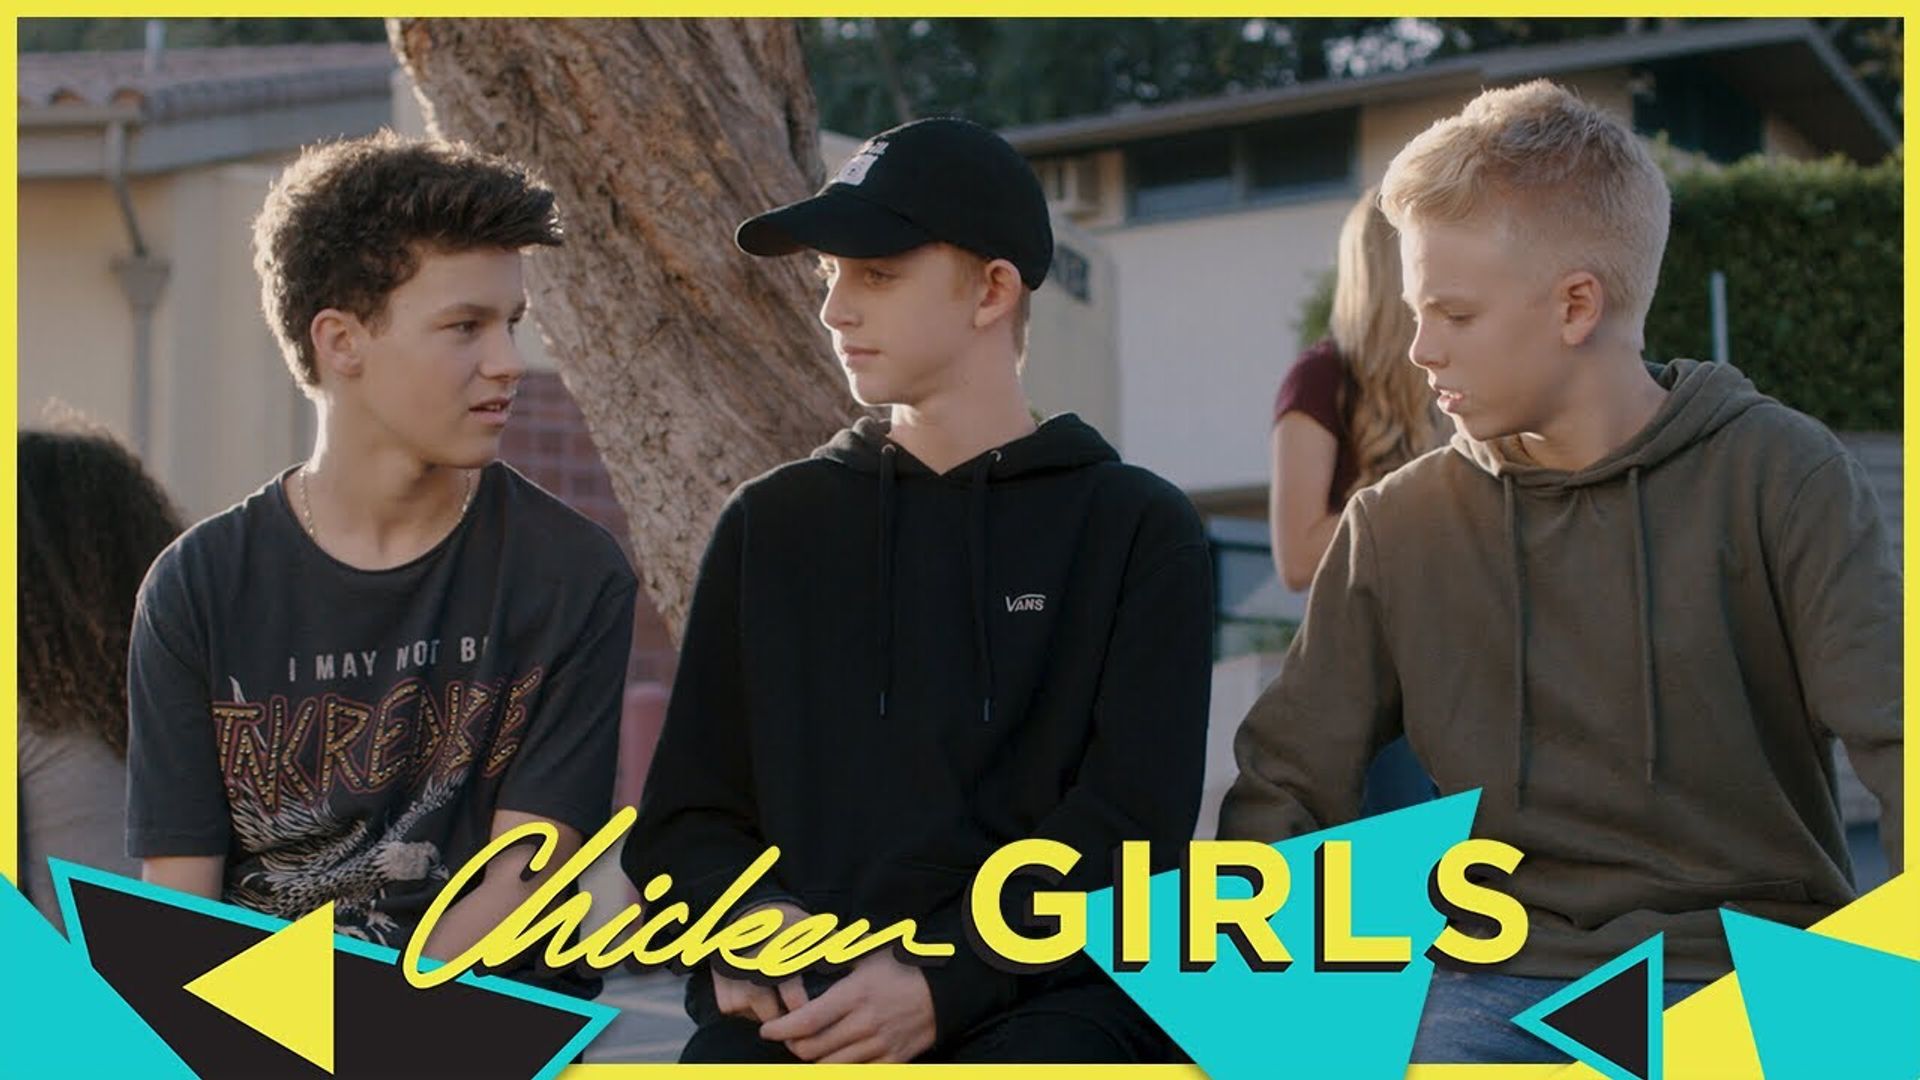 Chicken Girls background